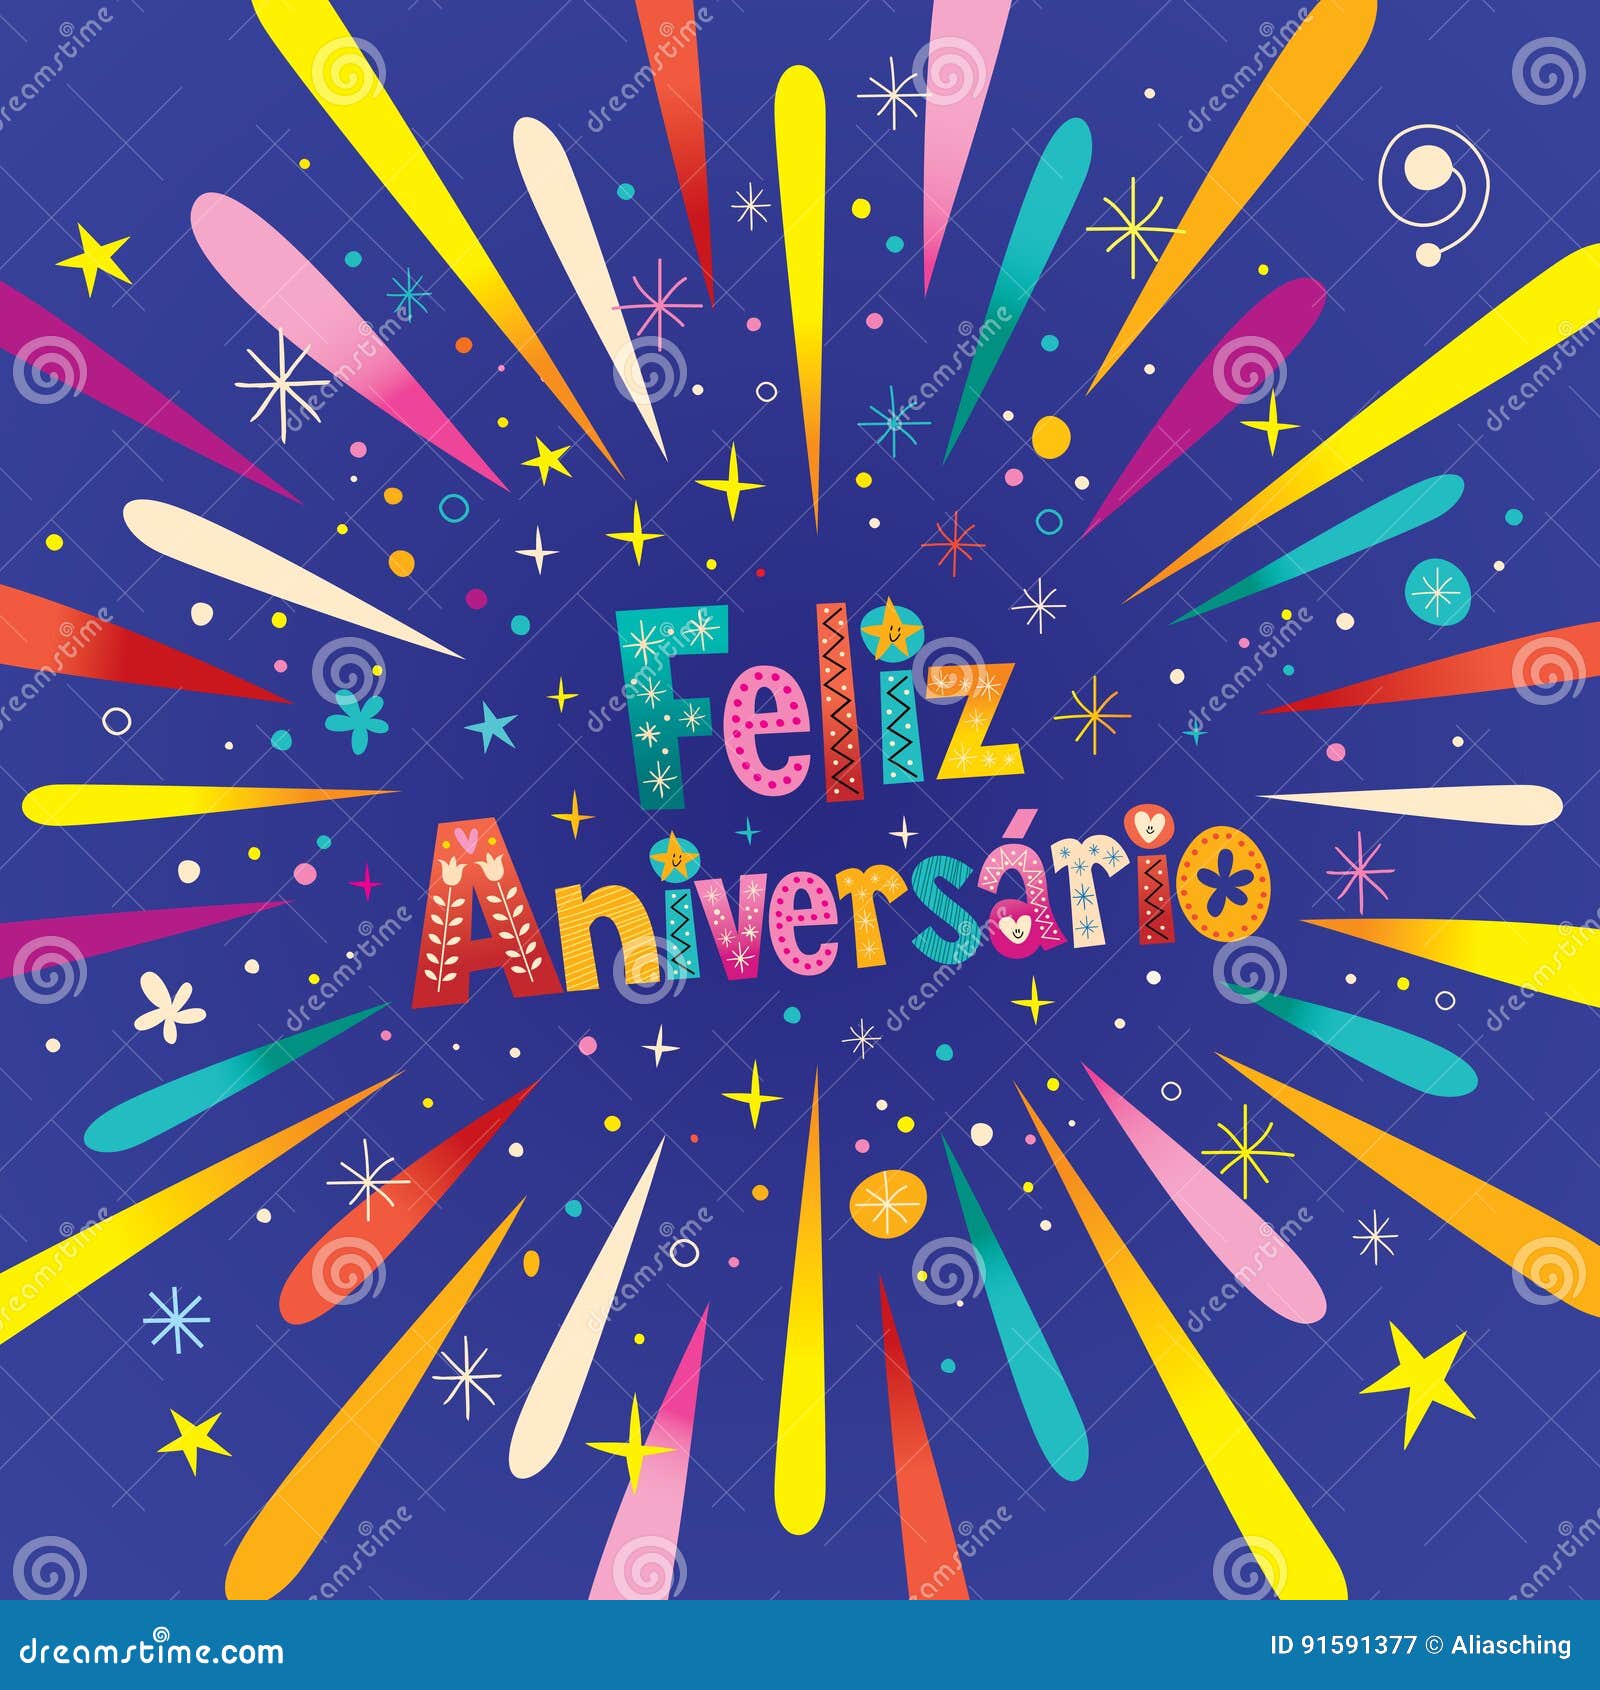 feliz aniversario portuguese happy birthday greeting card